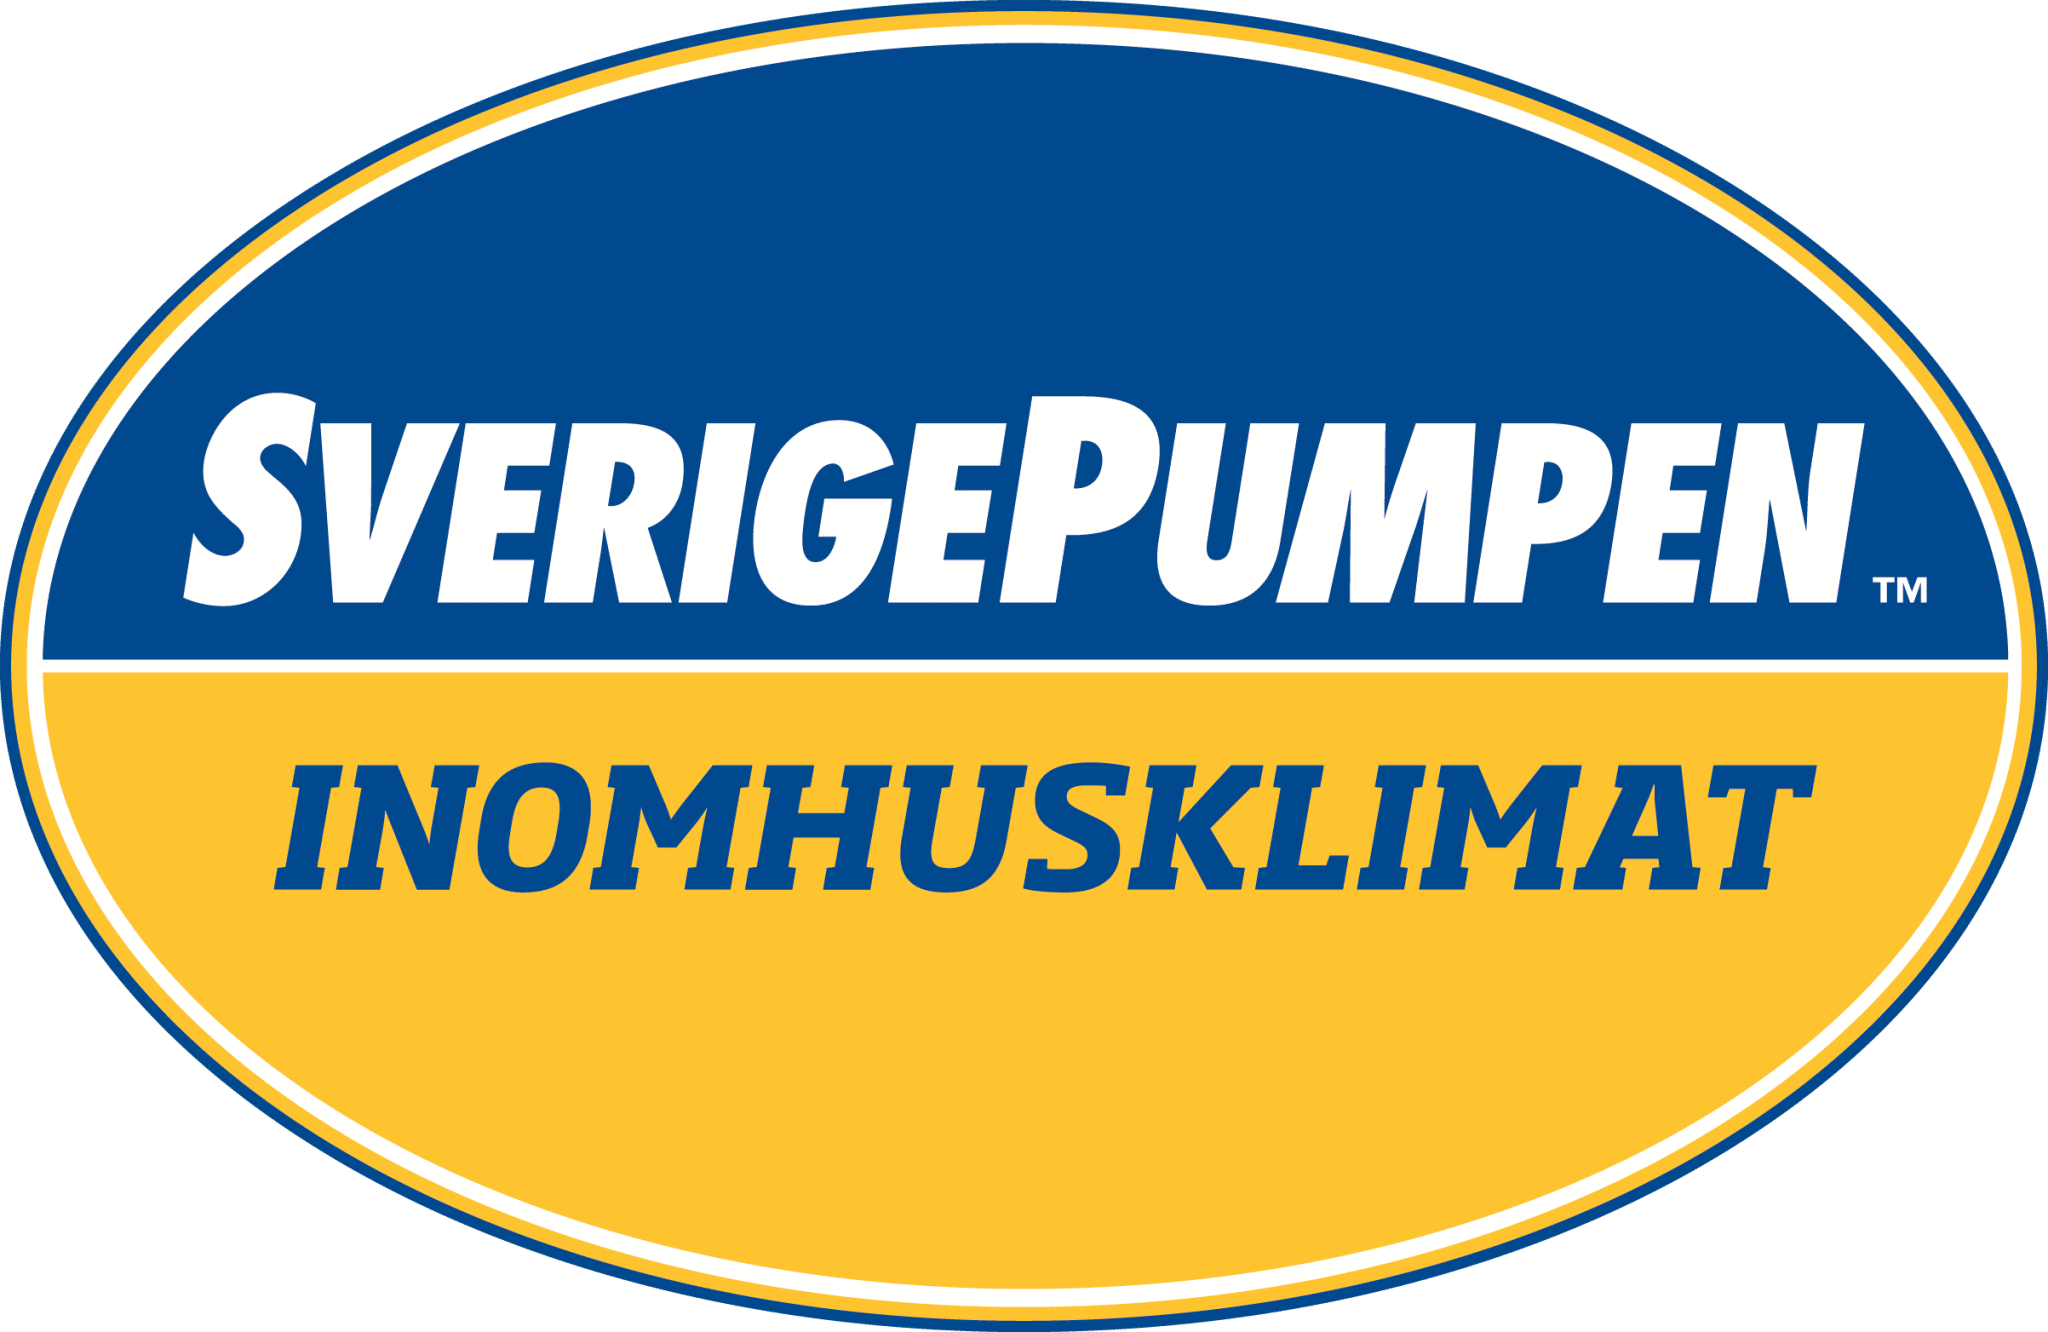 Sverigepumpen - ger dig ett bättre inomhusklimat med hjälp av en luftvärmepump.